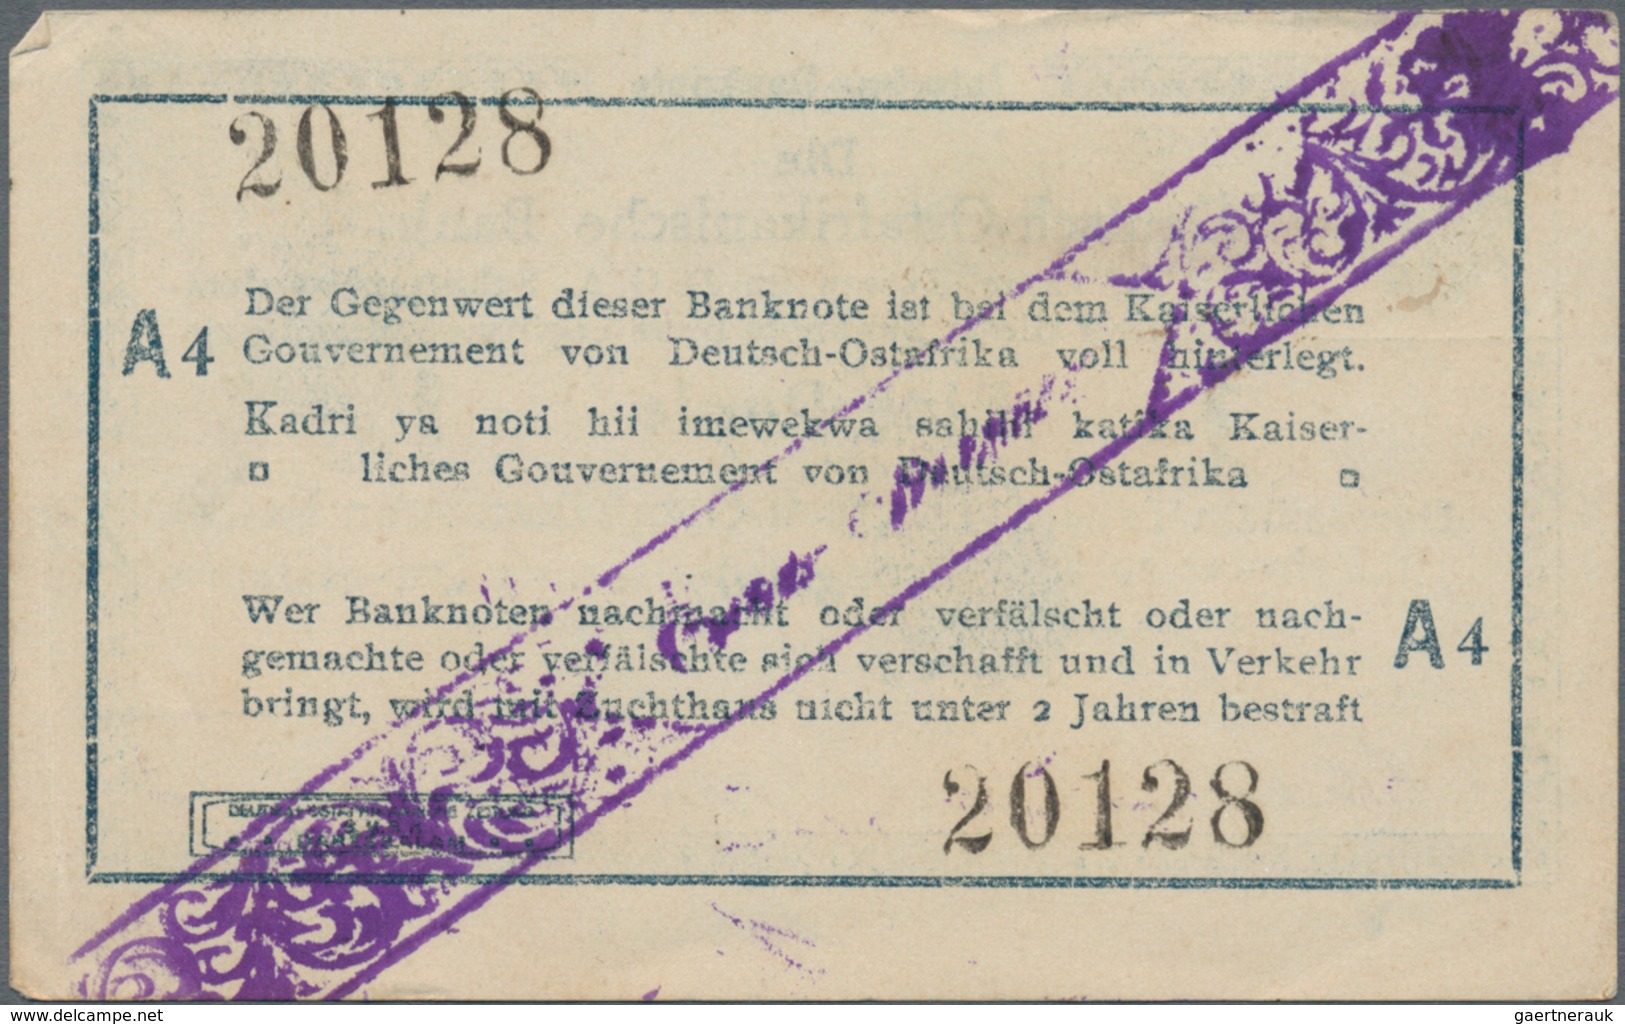 Deutschland - Kolonien: Kleines Lot mit 13 Banknoten DOA, dabei 2 x 1 Rupie 1.11.1915 Serie A (Ro.91